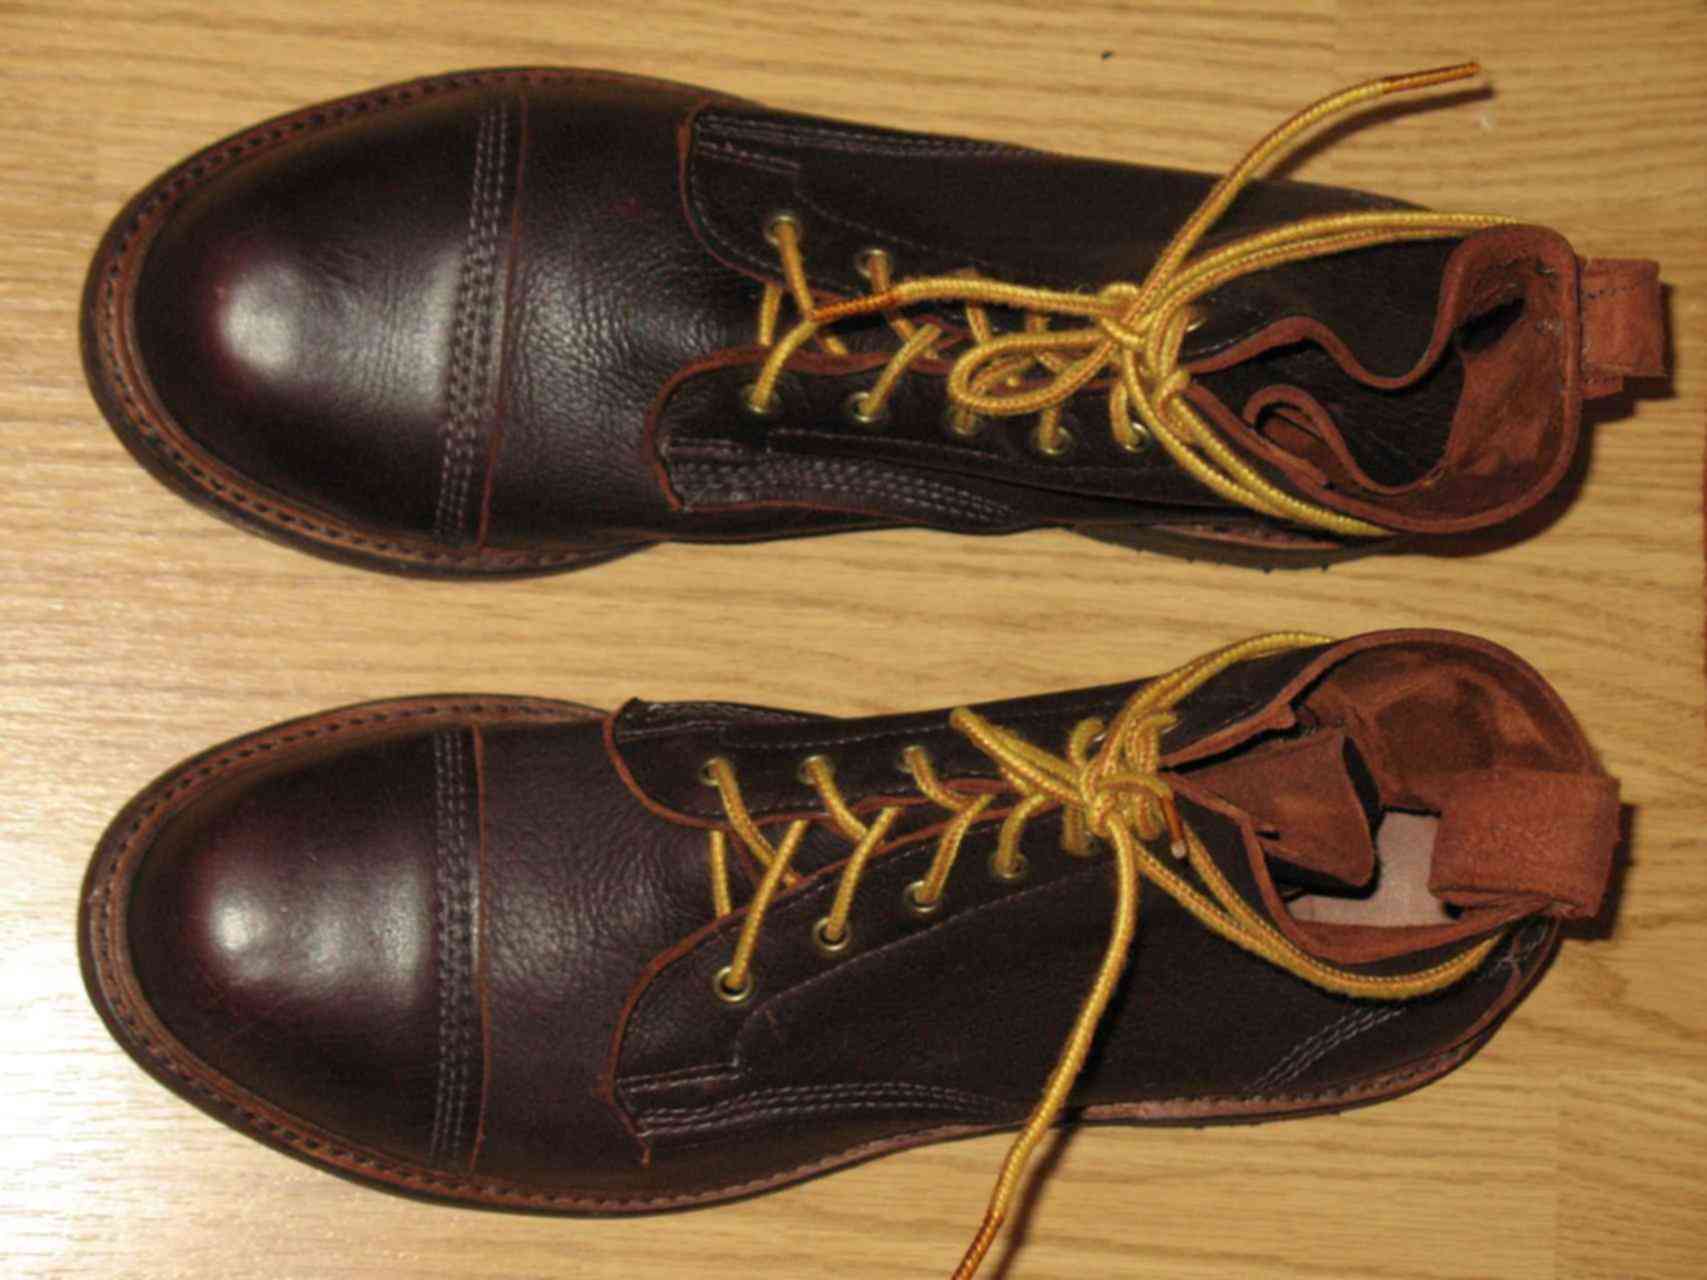 Авито мужские обувь бу